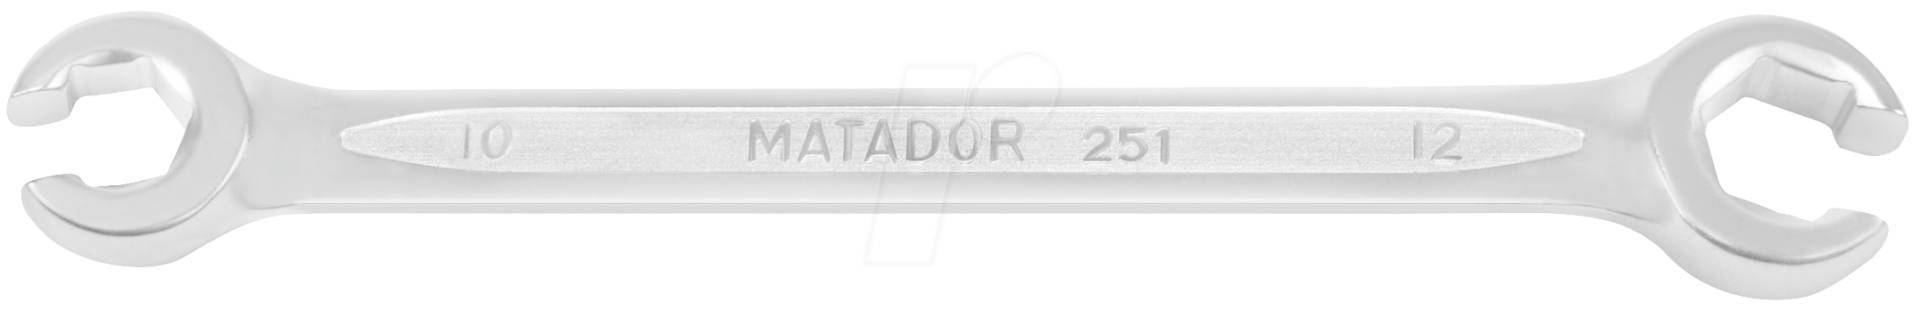 MAT 0251 3641 - Ringschlüssel, offen, SW 36 / 41, DIN 3118 von Matador